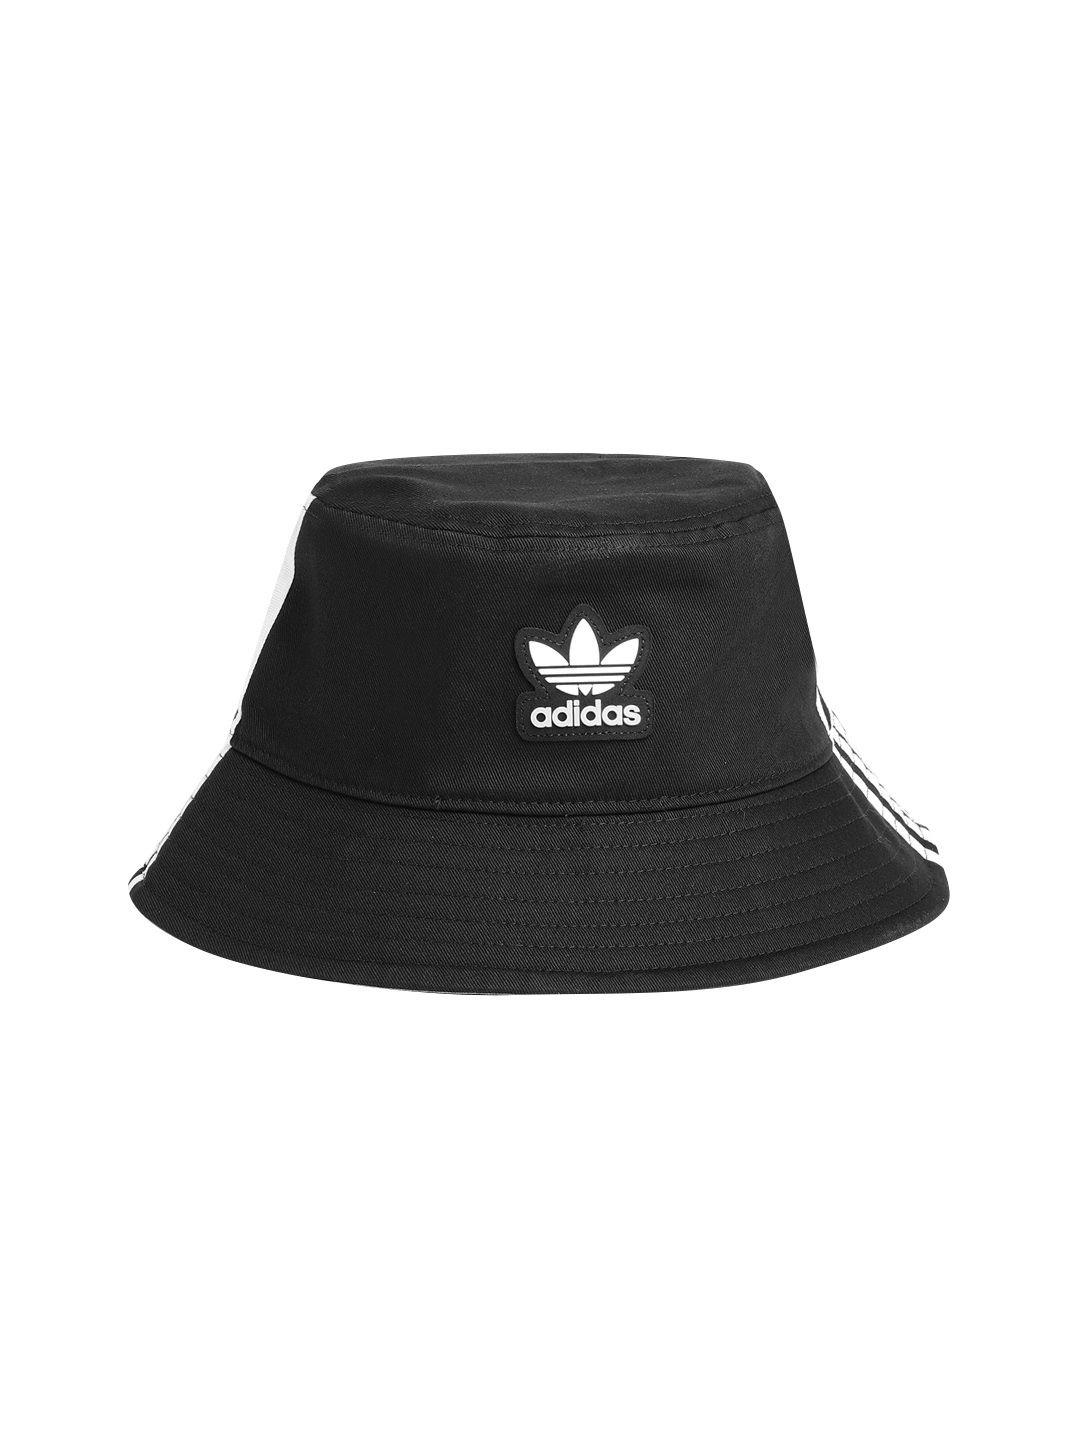 adidas-originals-unisex-cotton-brand-logo-detail-bucket-hat